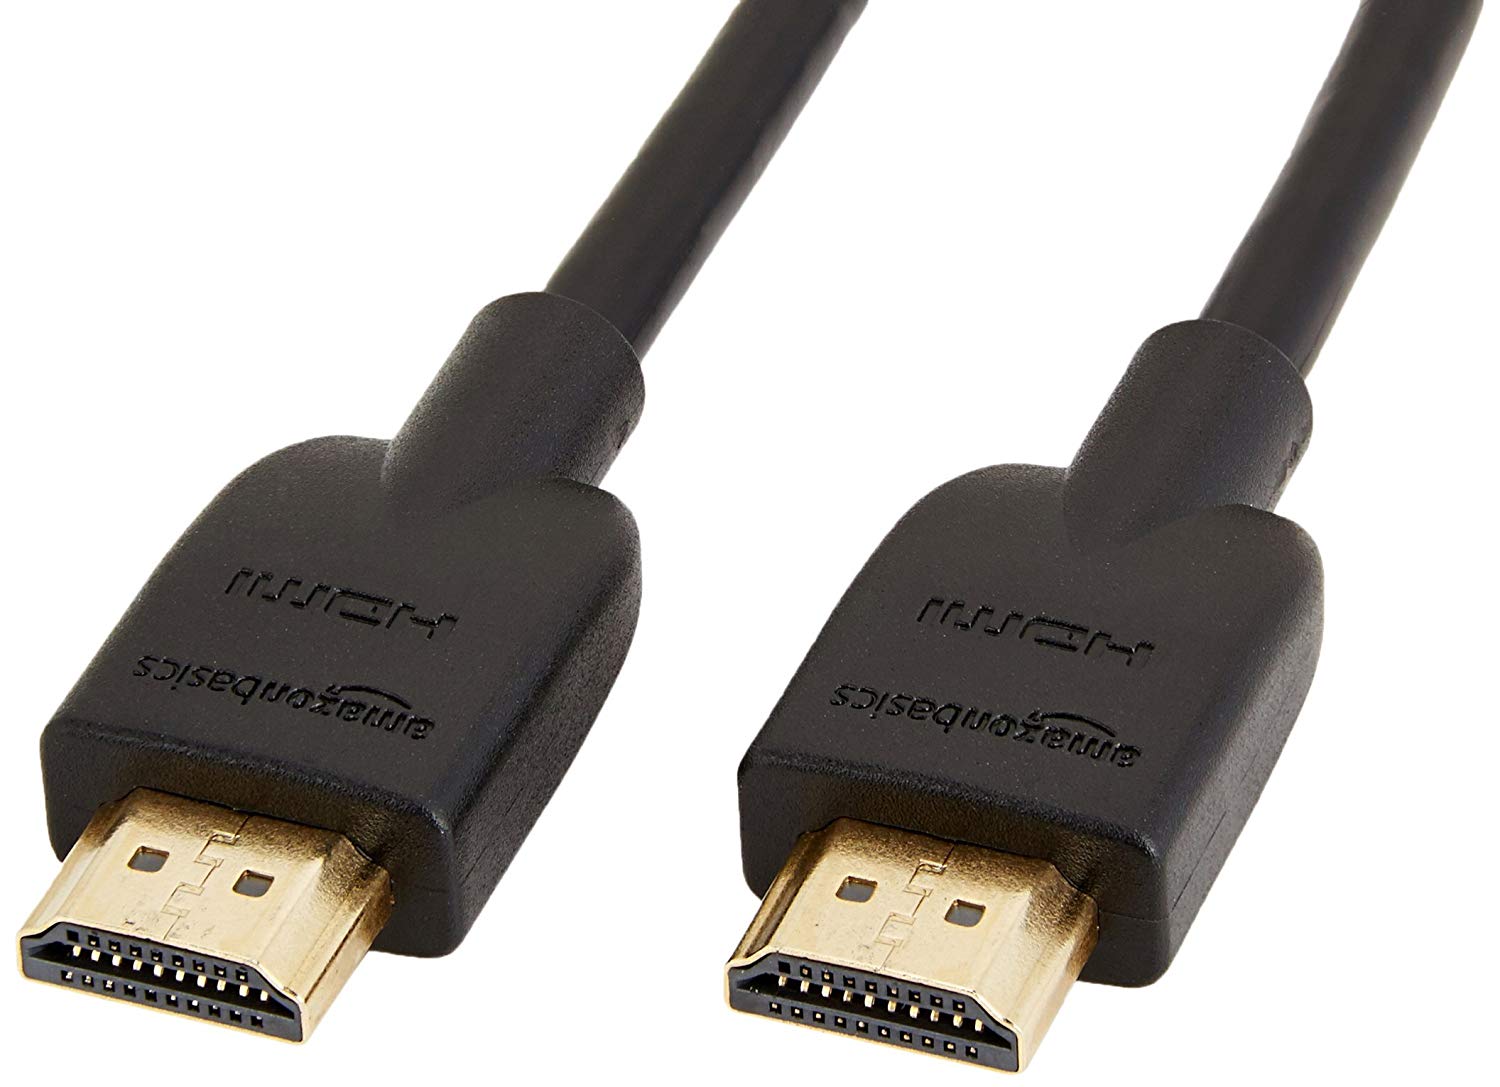 Dây cáp tốc độ cao HDMI 3m Cable (Đen) - Black